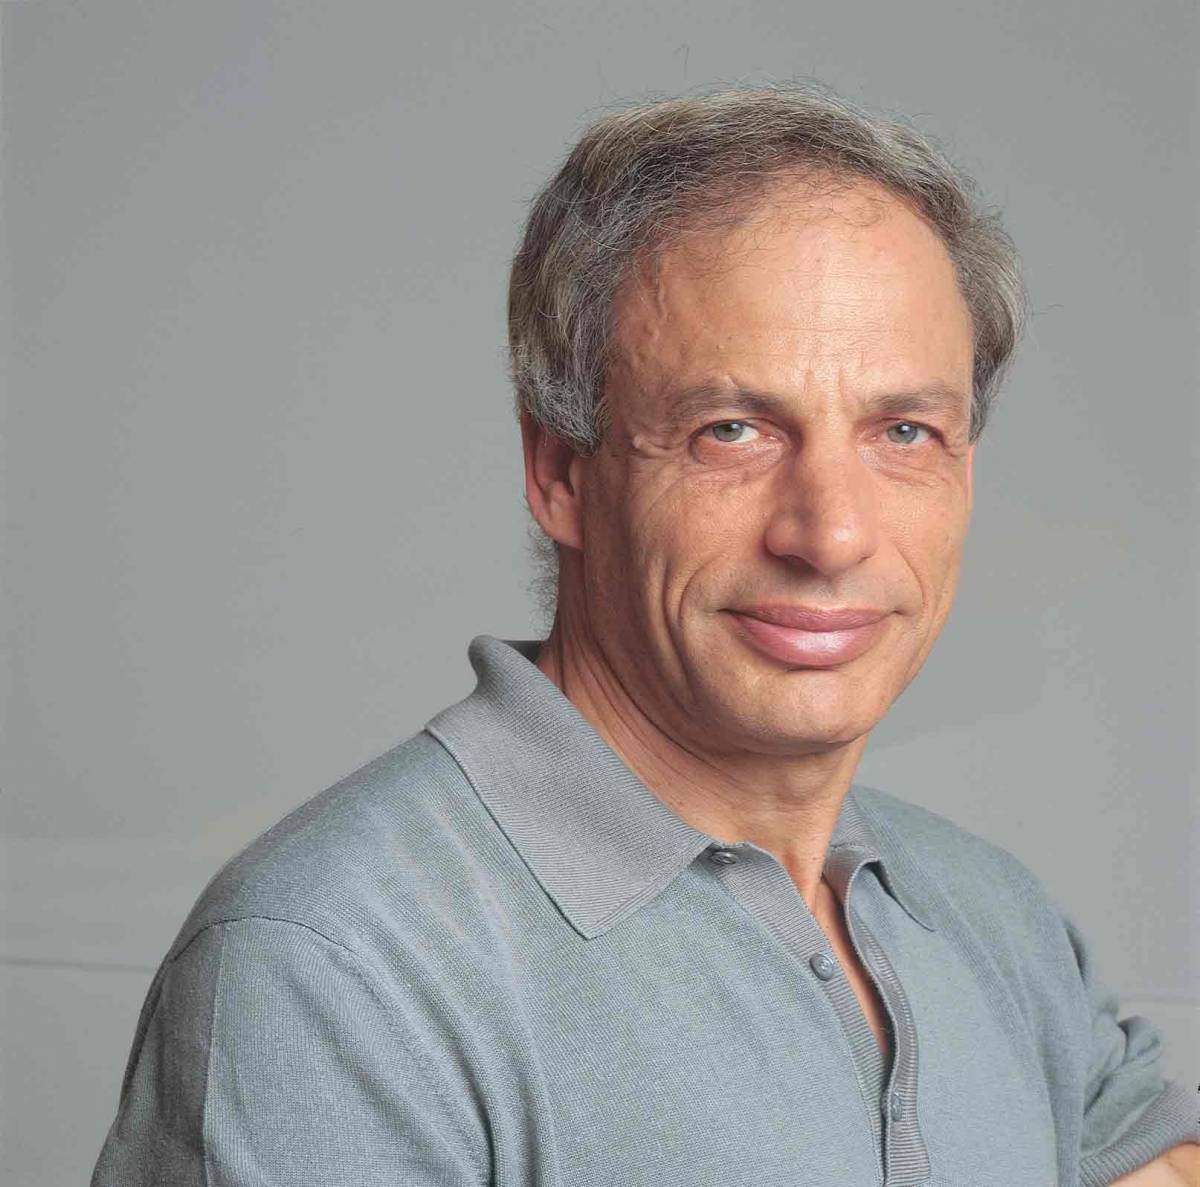 Prof. Shimon Ullman